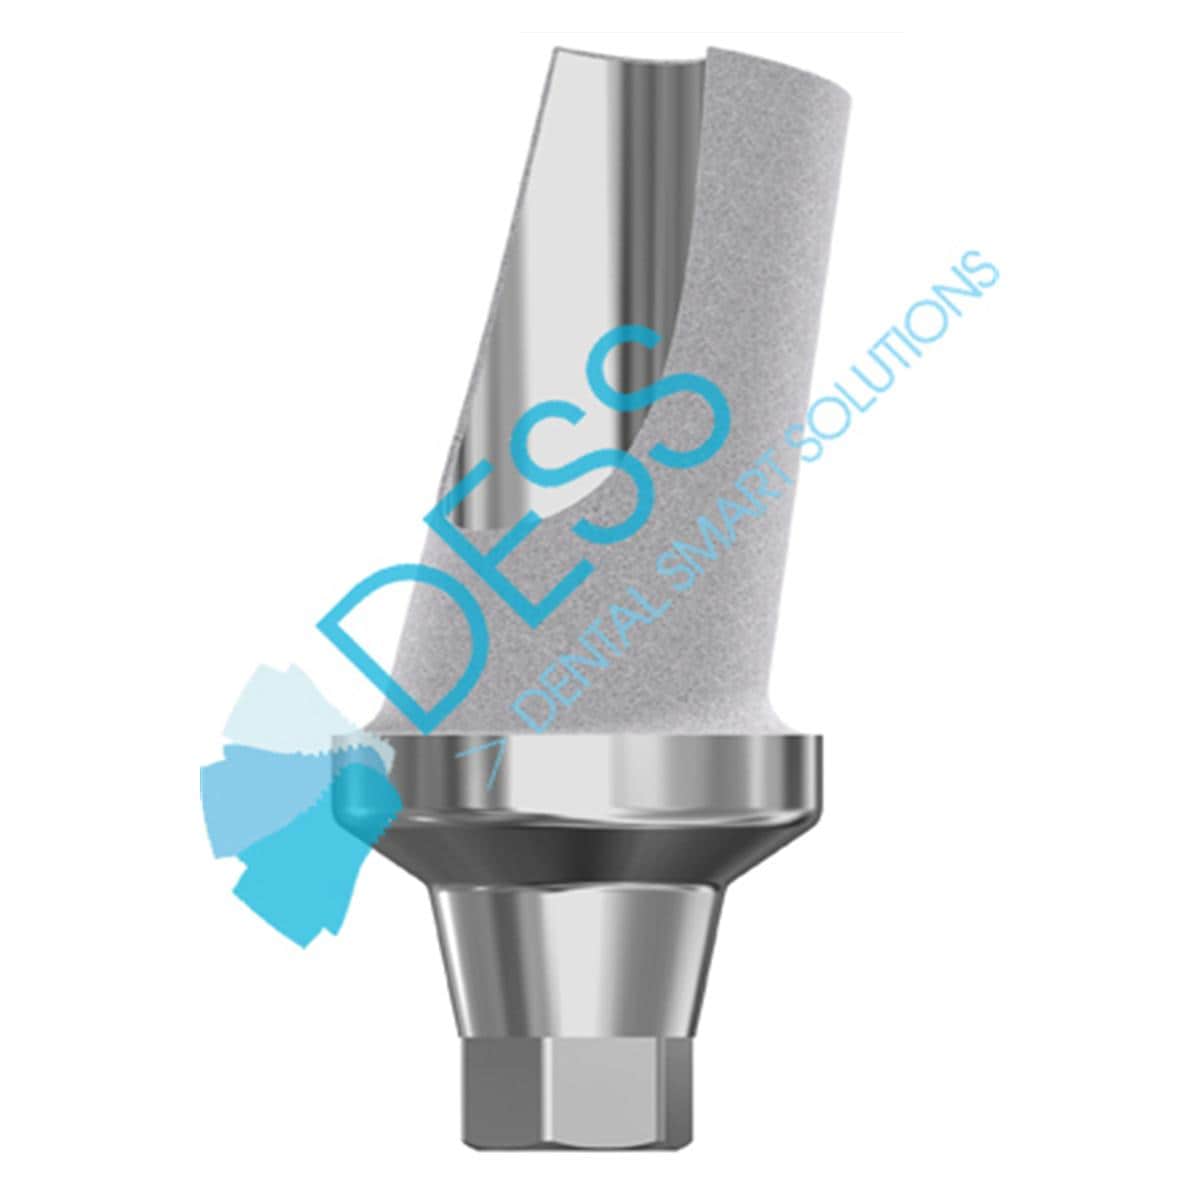 Titanabutment - kompatibel mit Astra Tech™ Osseospeed™ - Aqua (RP) Ø 3,5 mm - 4,0 mm, 15° gewinkelt